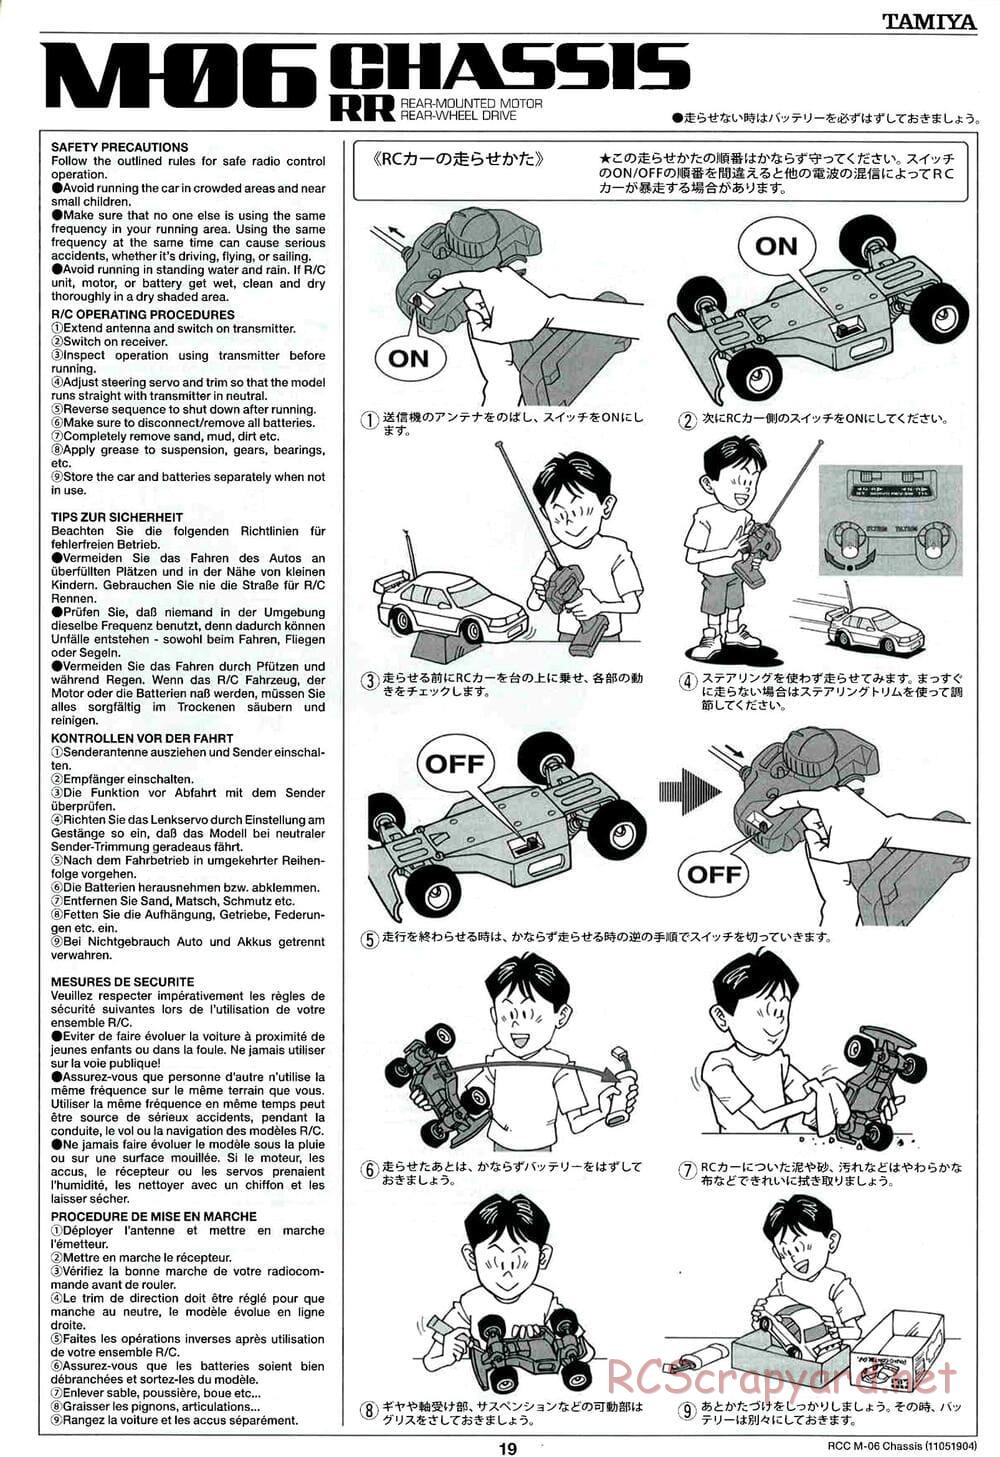 Tamiya - M-06 Chassis - Manual - Page 19